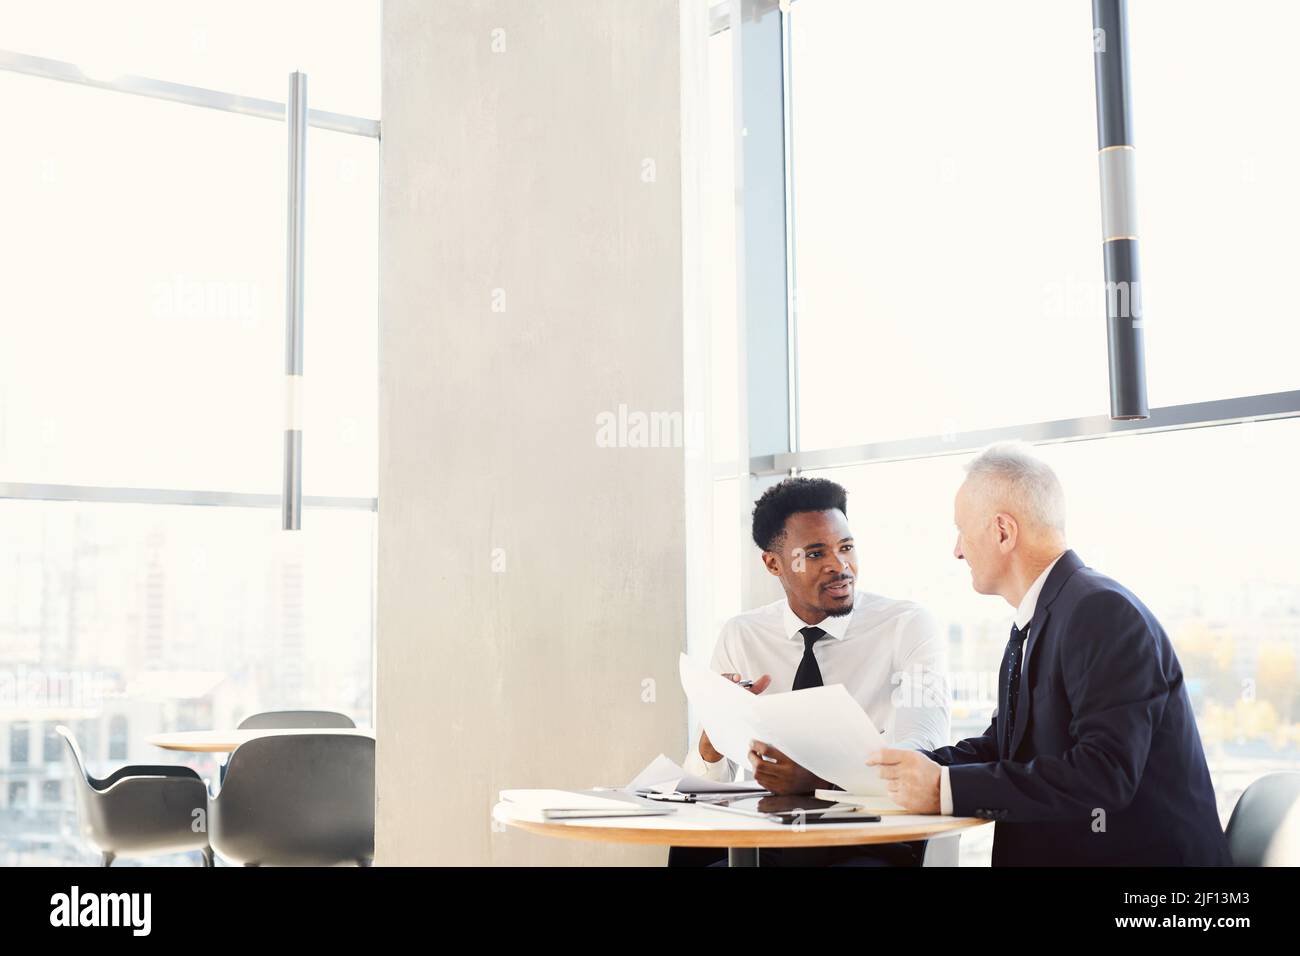 Zwei multiethnische Geschäftsleute in formellen Outfits sitzen im modernen Büro am Tisch und machen gemeinsam Schreibarbeit Stockfoto